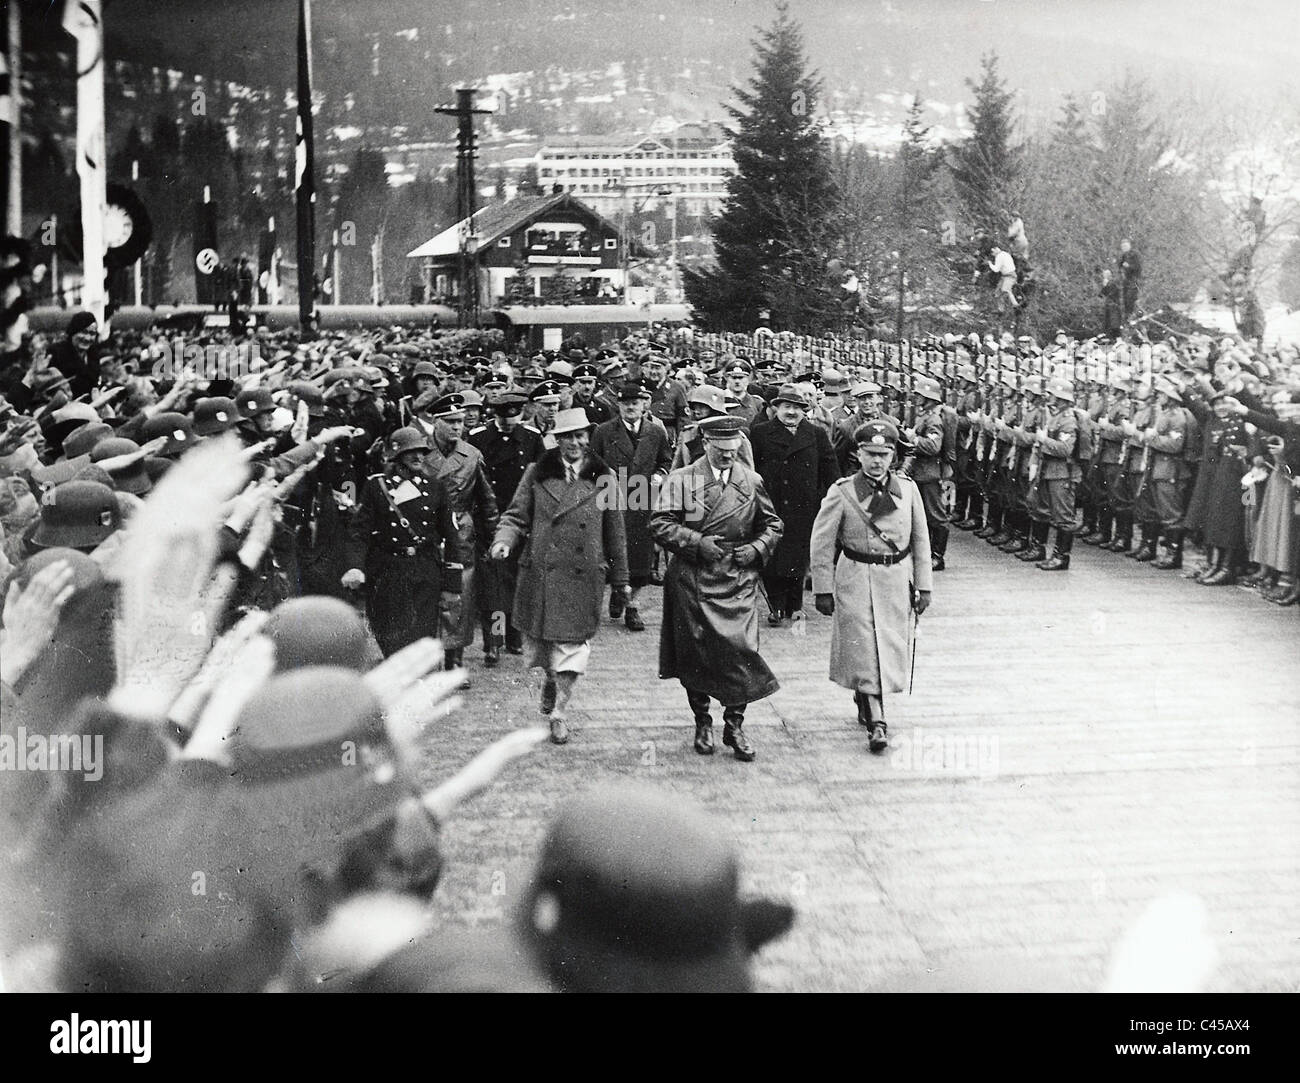 Adolf Hitler before the ski stadium in Garmisch-Partenkirchen, 1936 Stock Photo